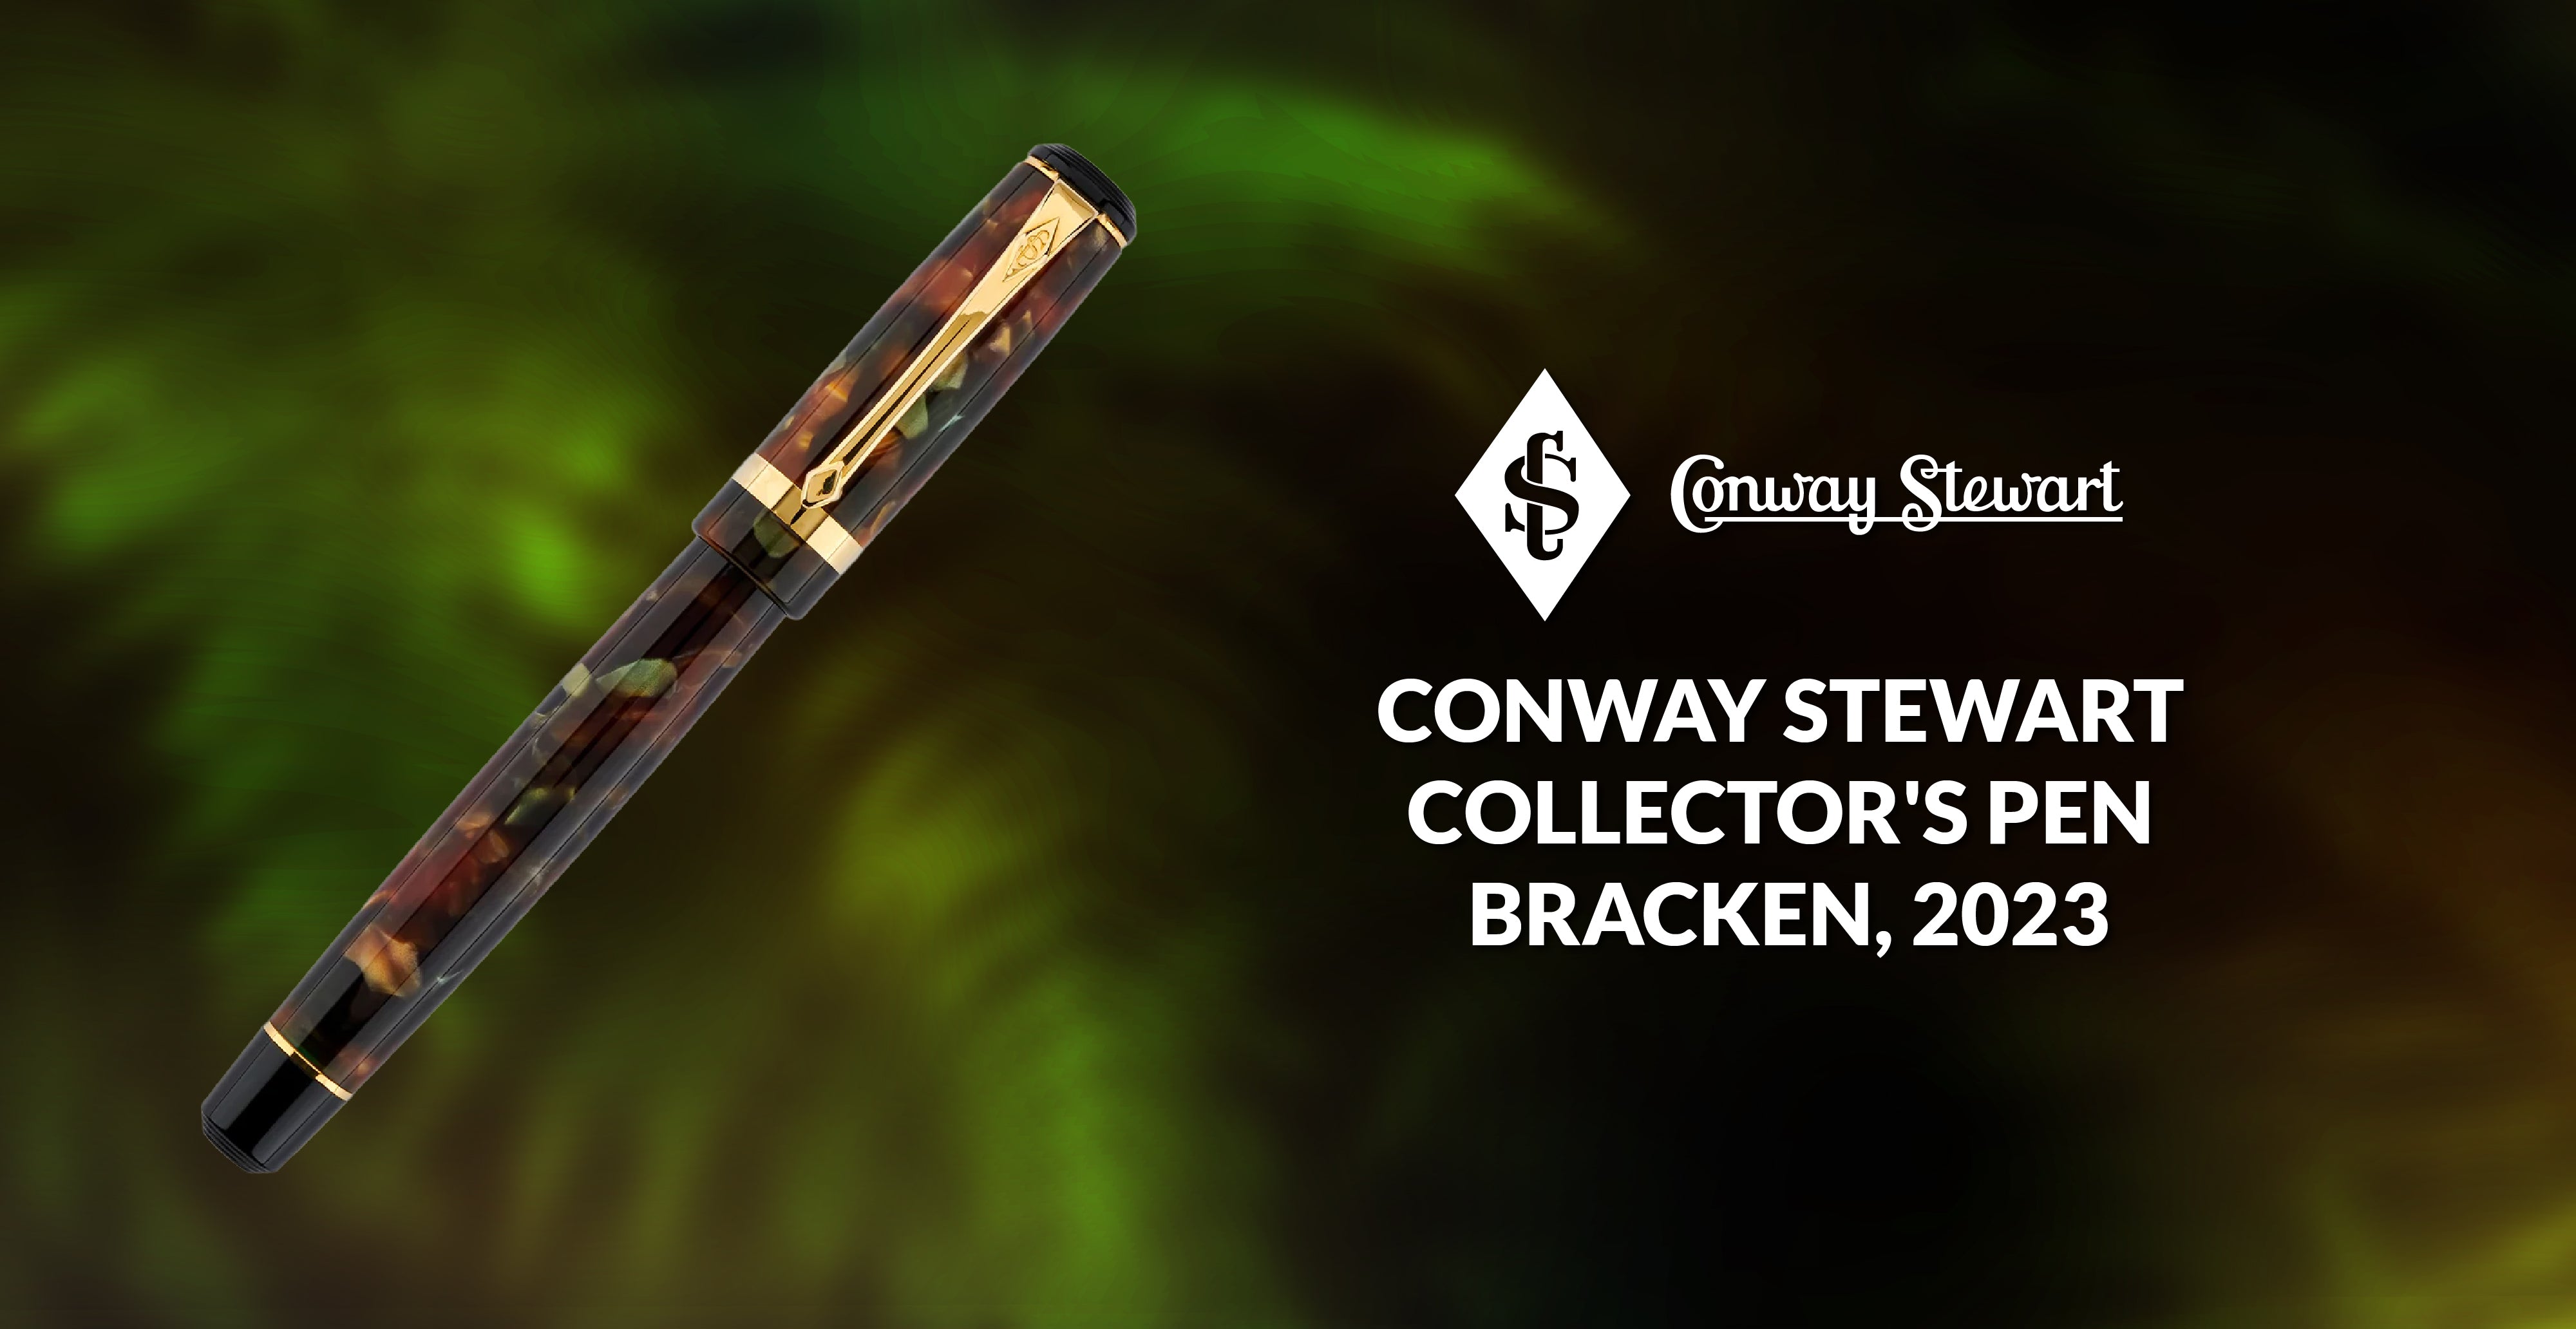 Conway Stewart Collector's pen - Bracken, 2023